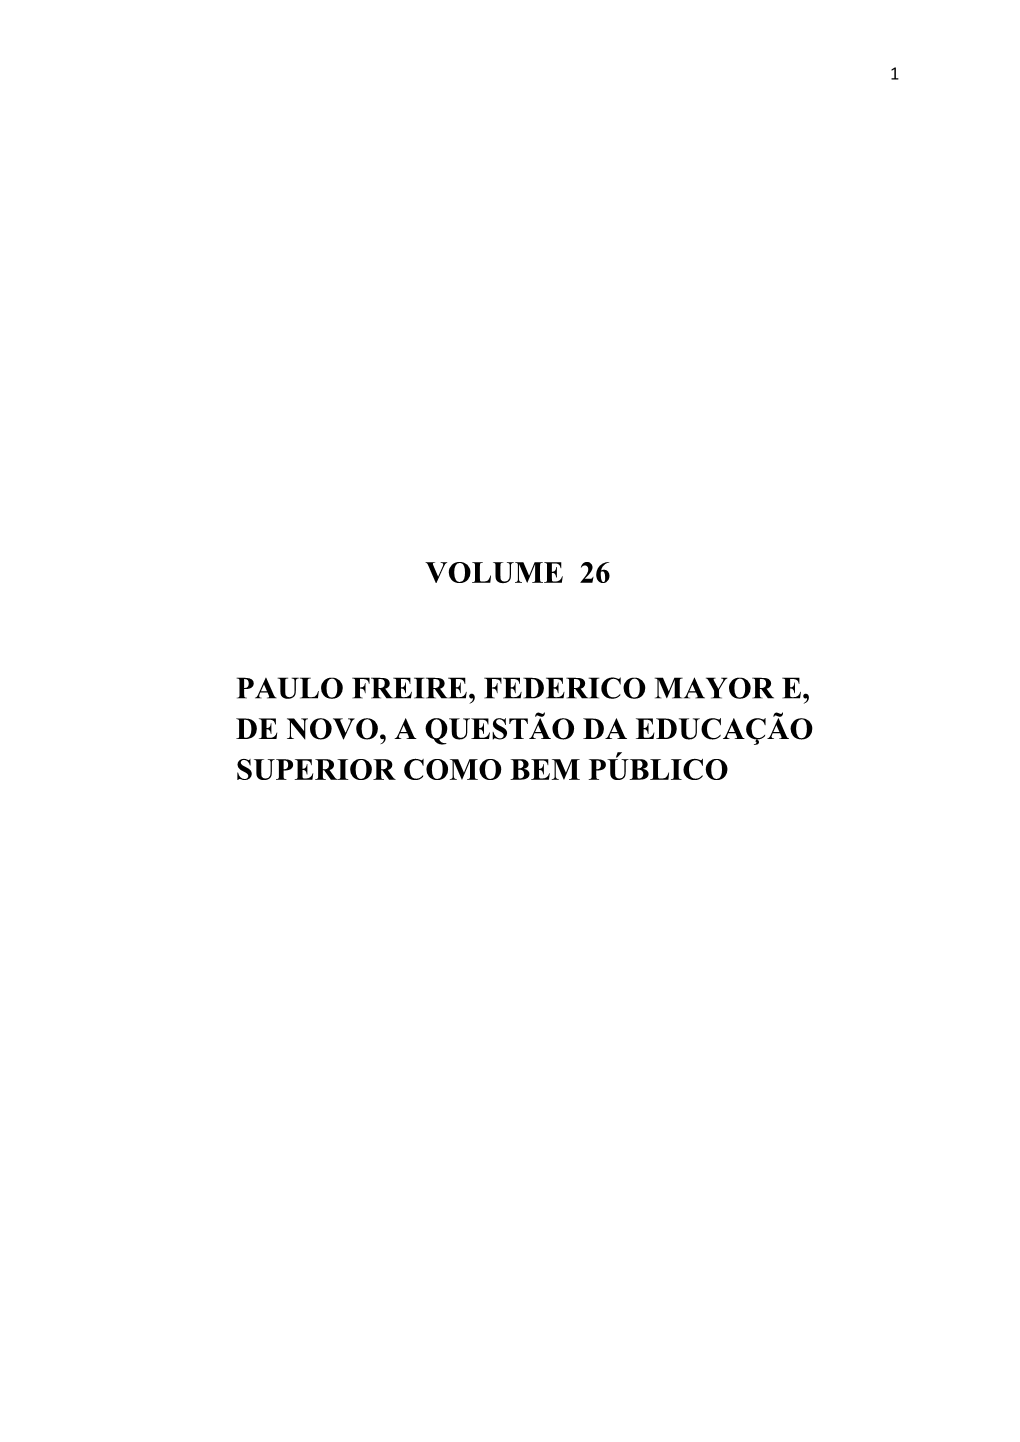 Volume 26 Paulo Freire, Federico Mayor E, De Novo, a Questão Da Educação Superior Como Bem Público